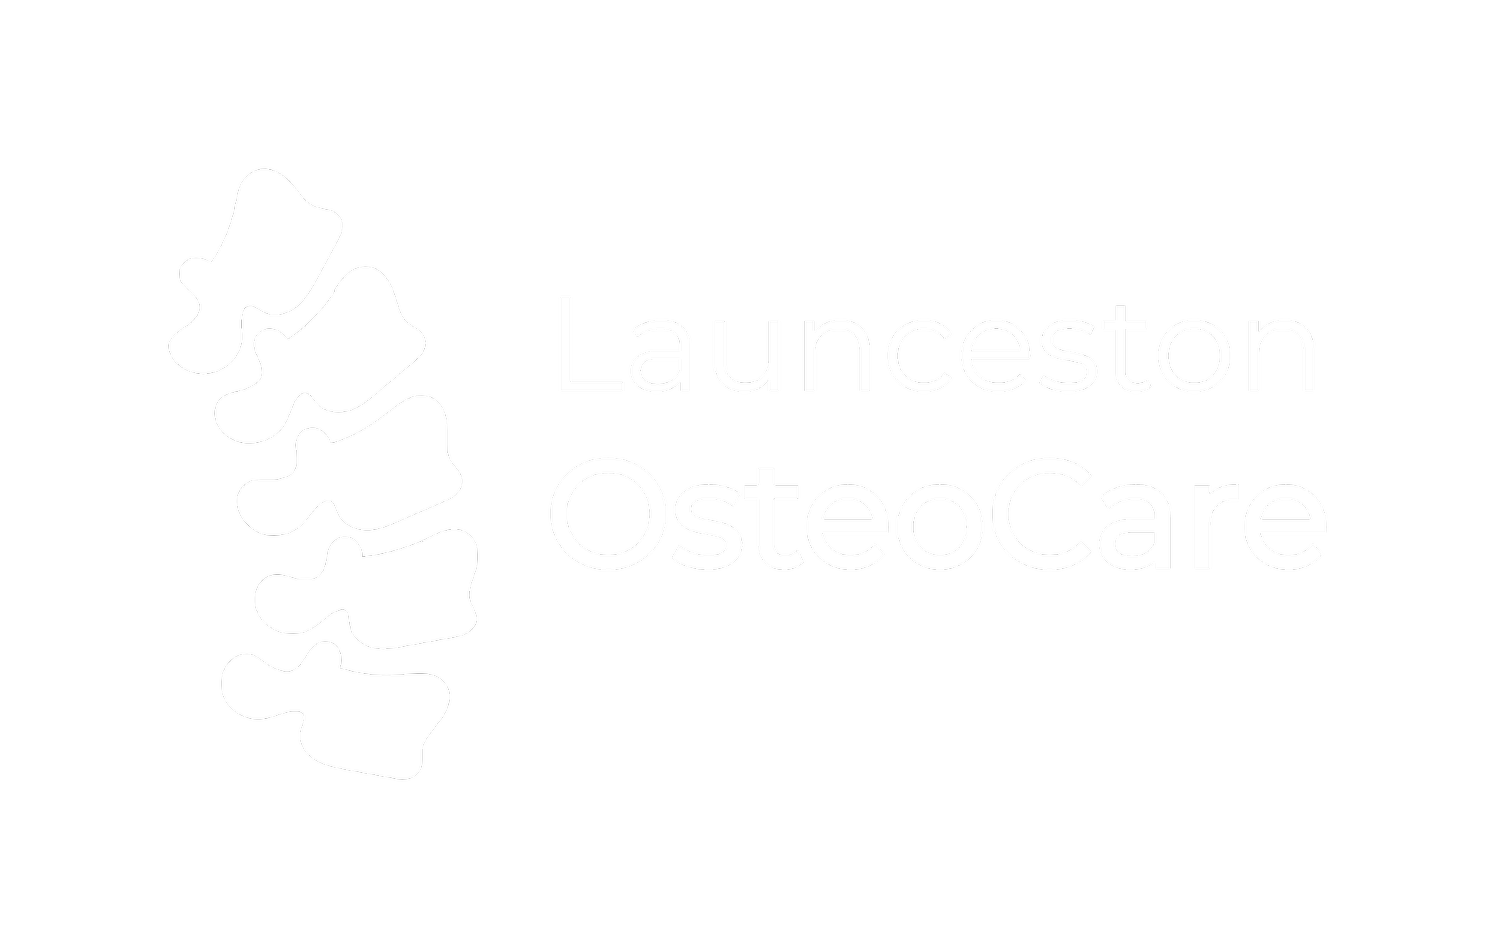 Launceston OsteoCare